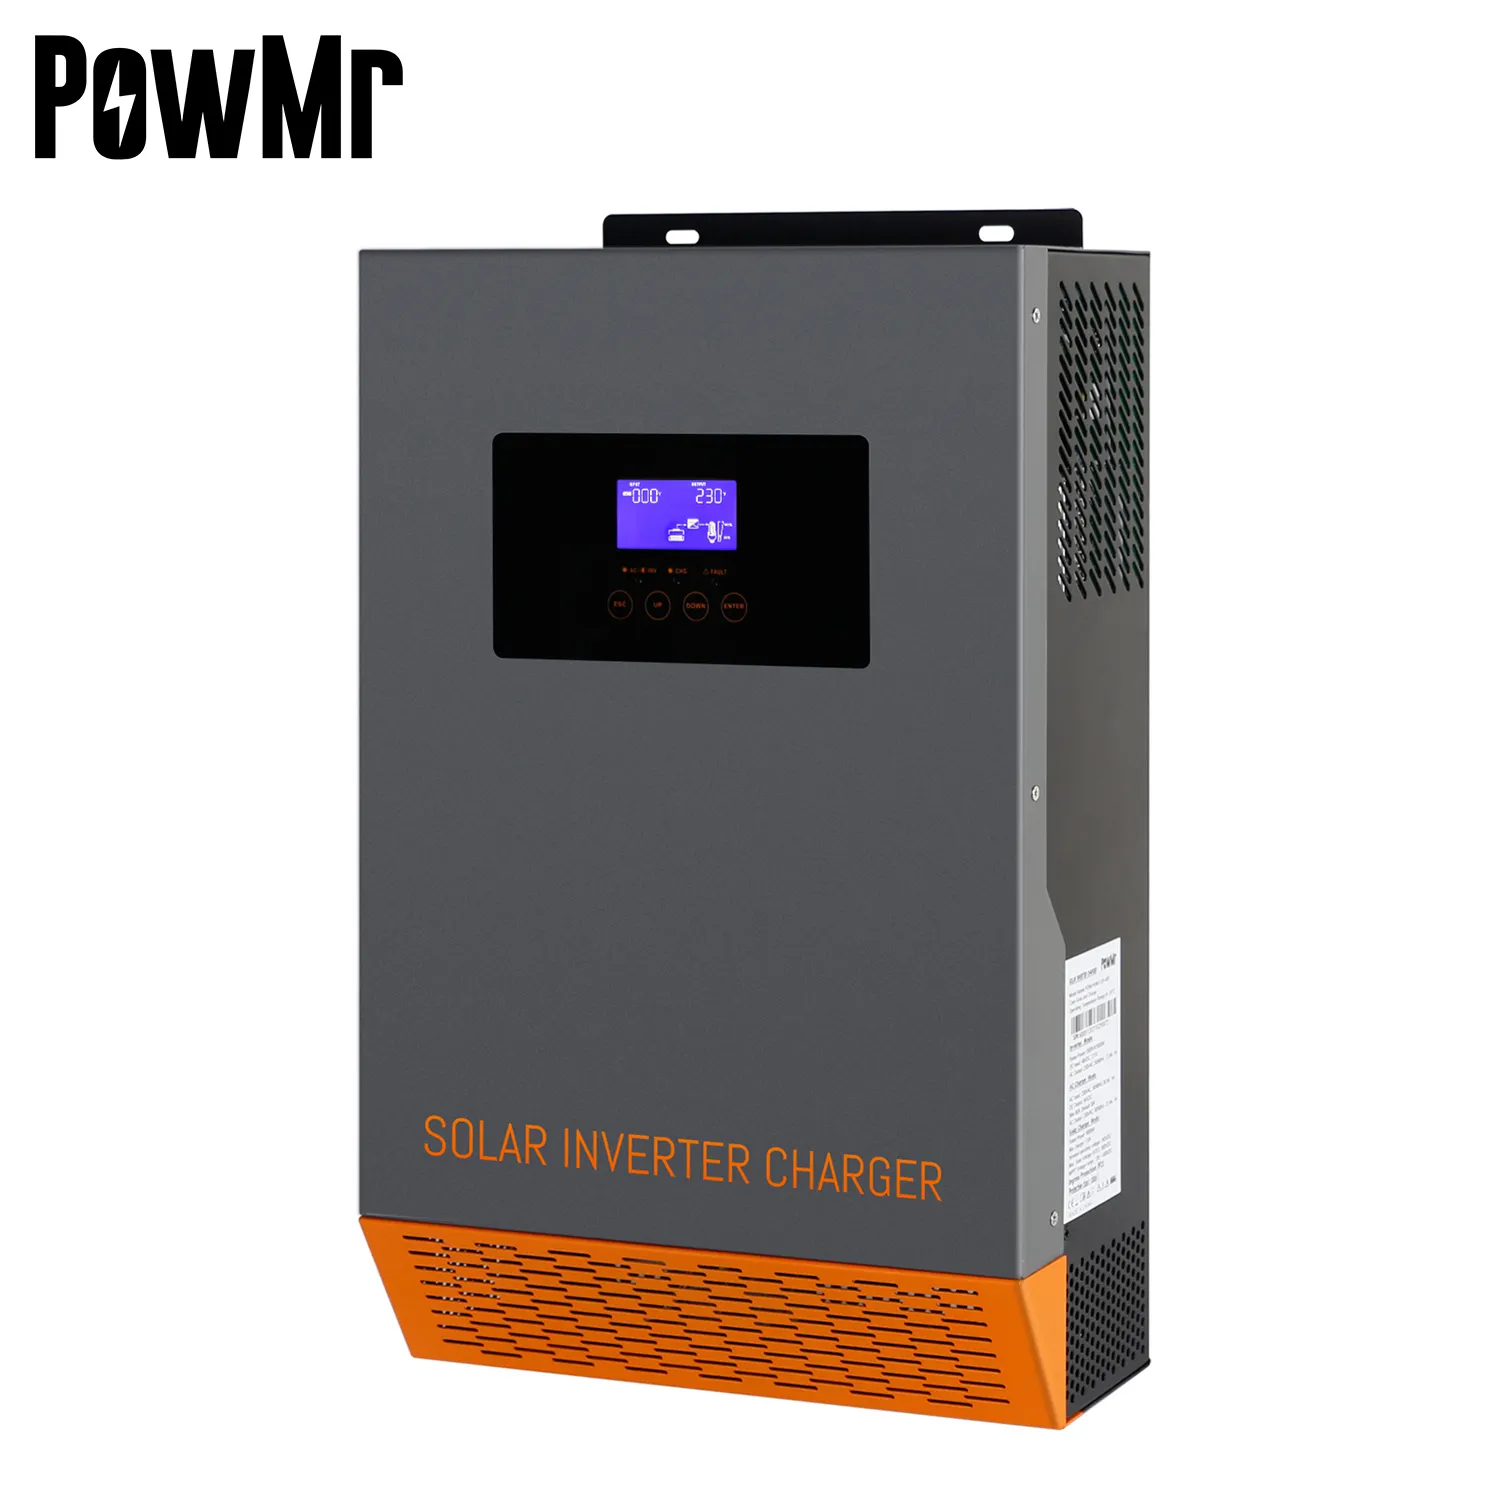 PowMr 3.5KW 5.5KW 220V Charger Hybrid Solar Inverter MPPT Inverter Power Hybrid Solar Inverter